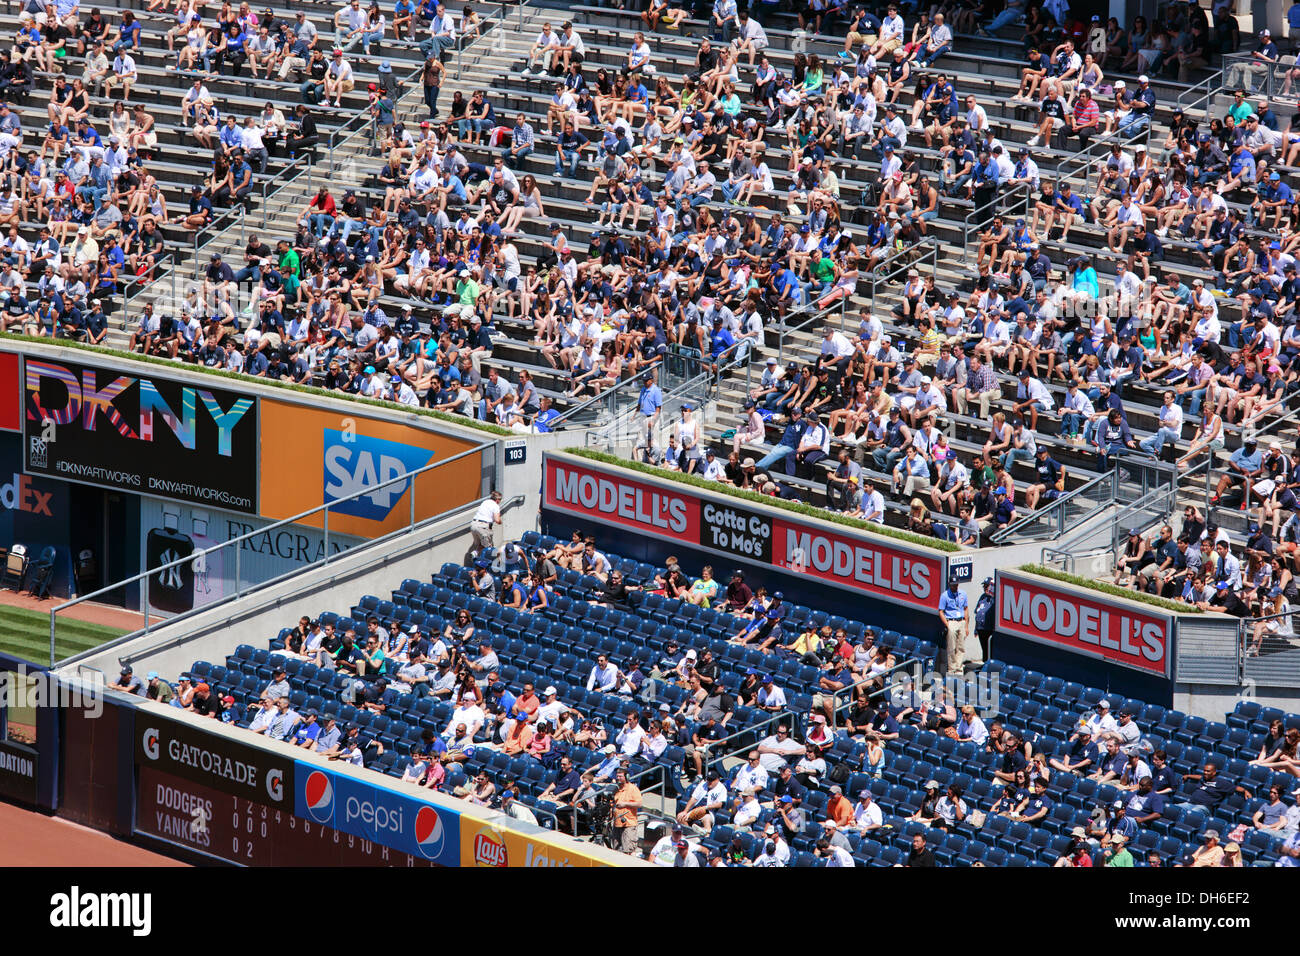 Bronx: New Yankee Stadium - Team Store, This picture was ta…